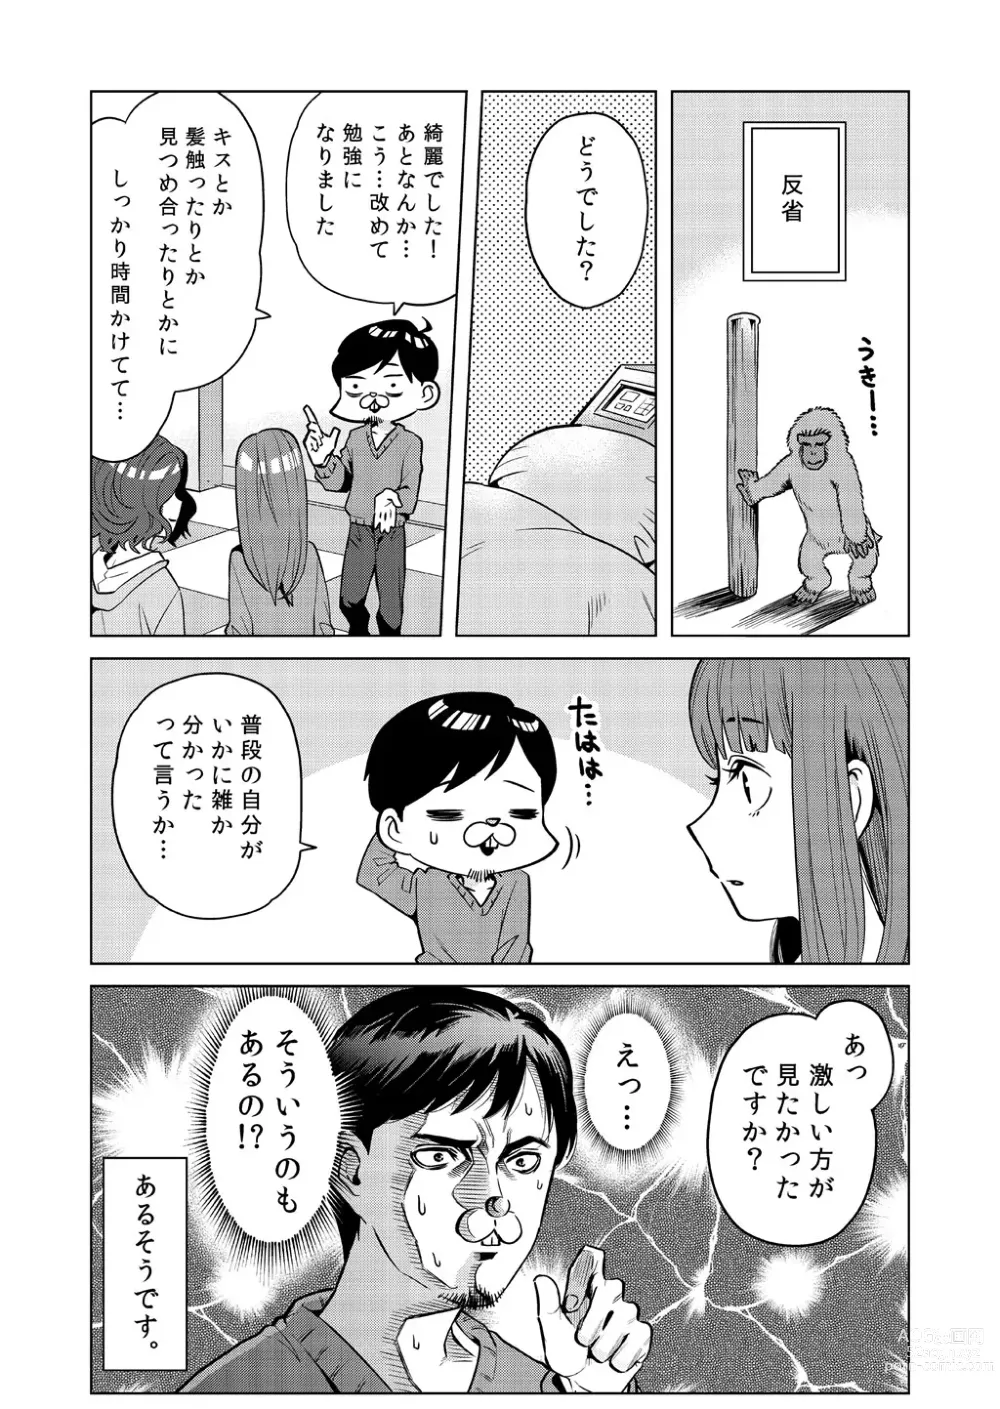 Page 5 of doujinshi Totsuno no Kanshou Kousurepo